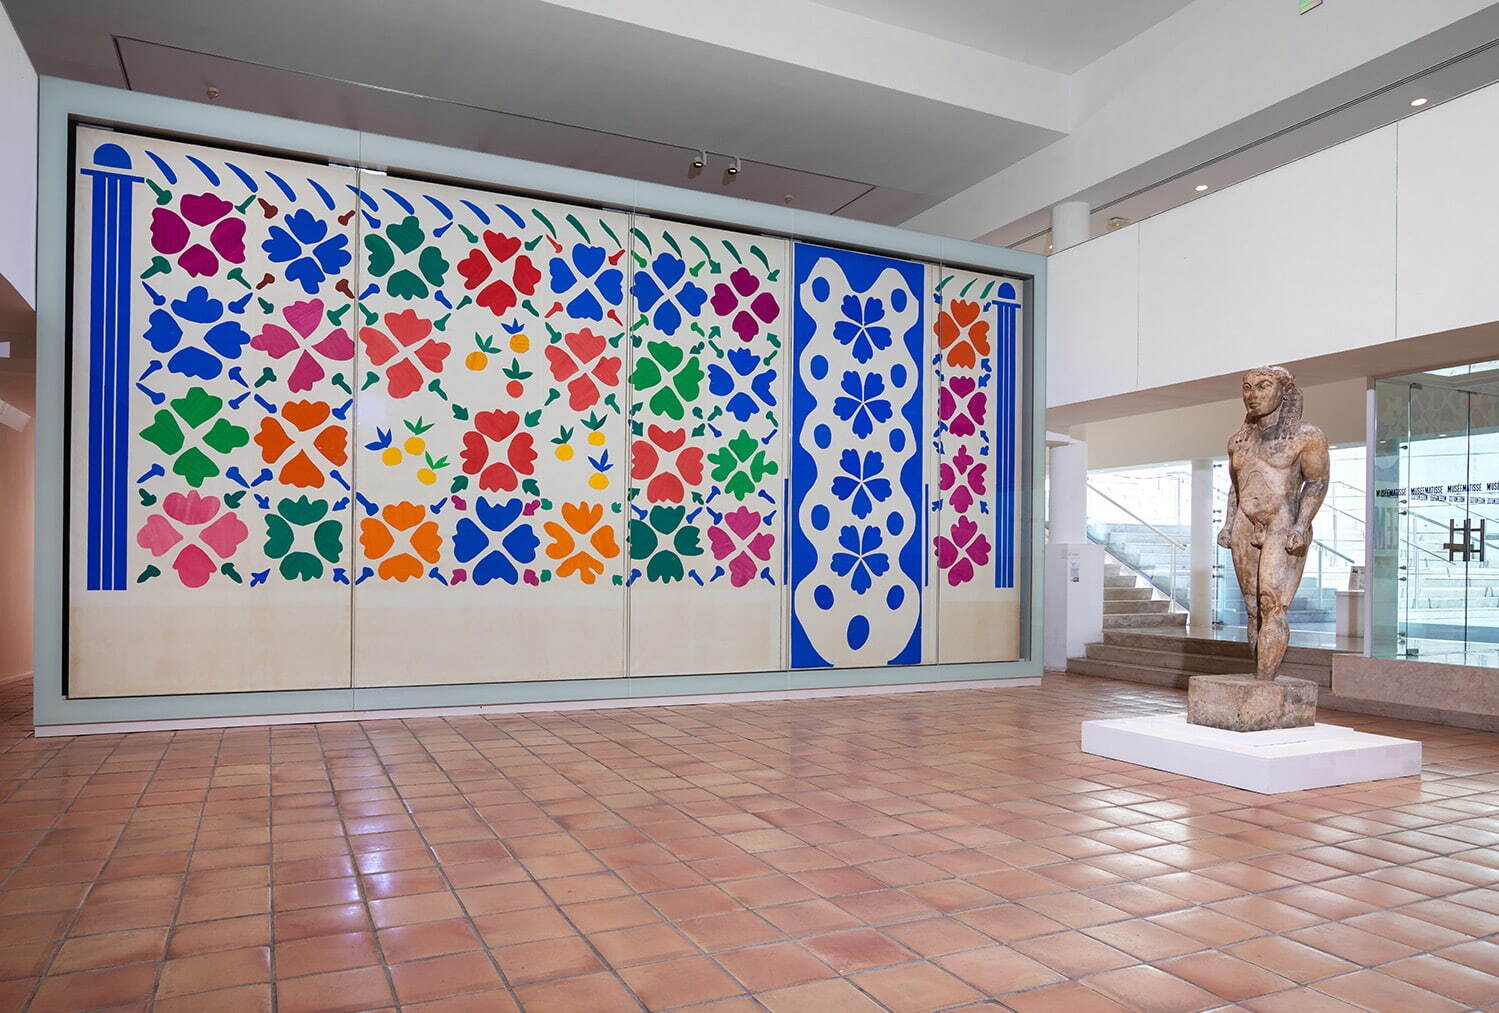 ニース市マティス美術館展示風景 2022年
©Succession H. Matisse pour l’œuvre de Matisse Photo: François Fernandez